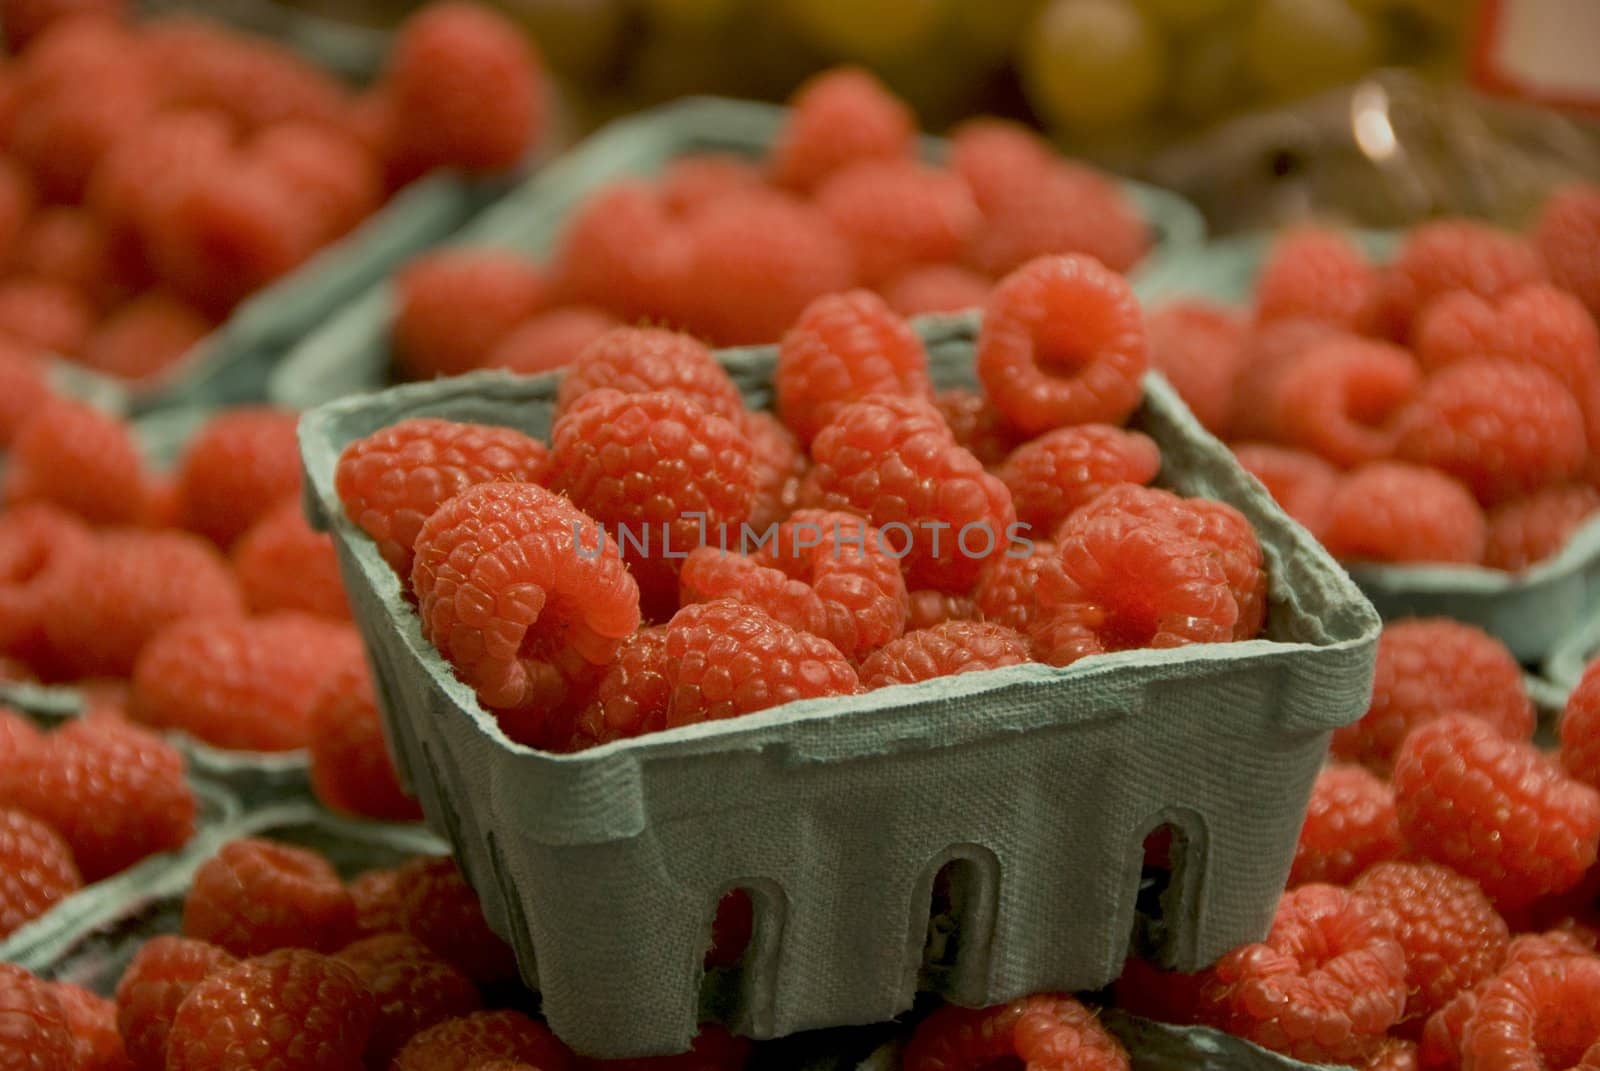 Fresh raspberries by seattlephoto